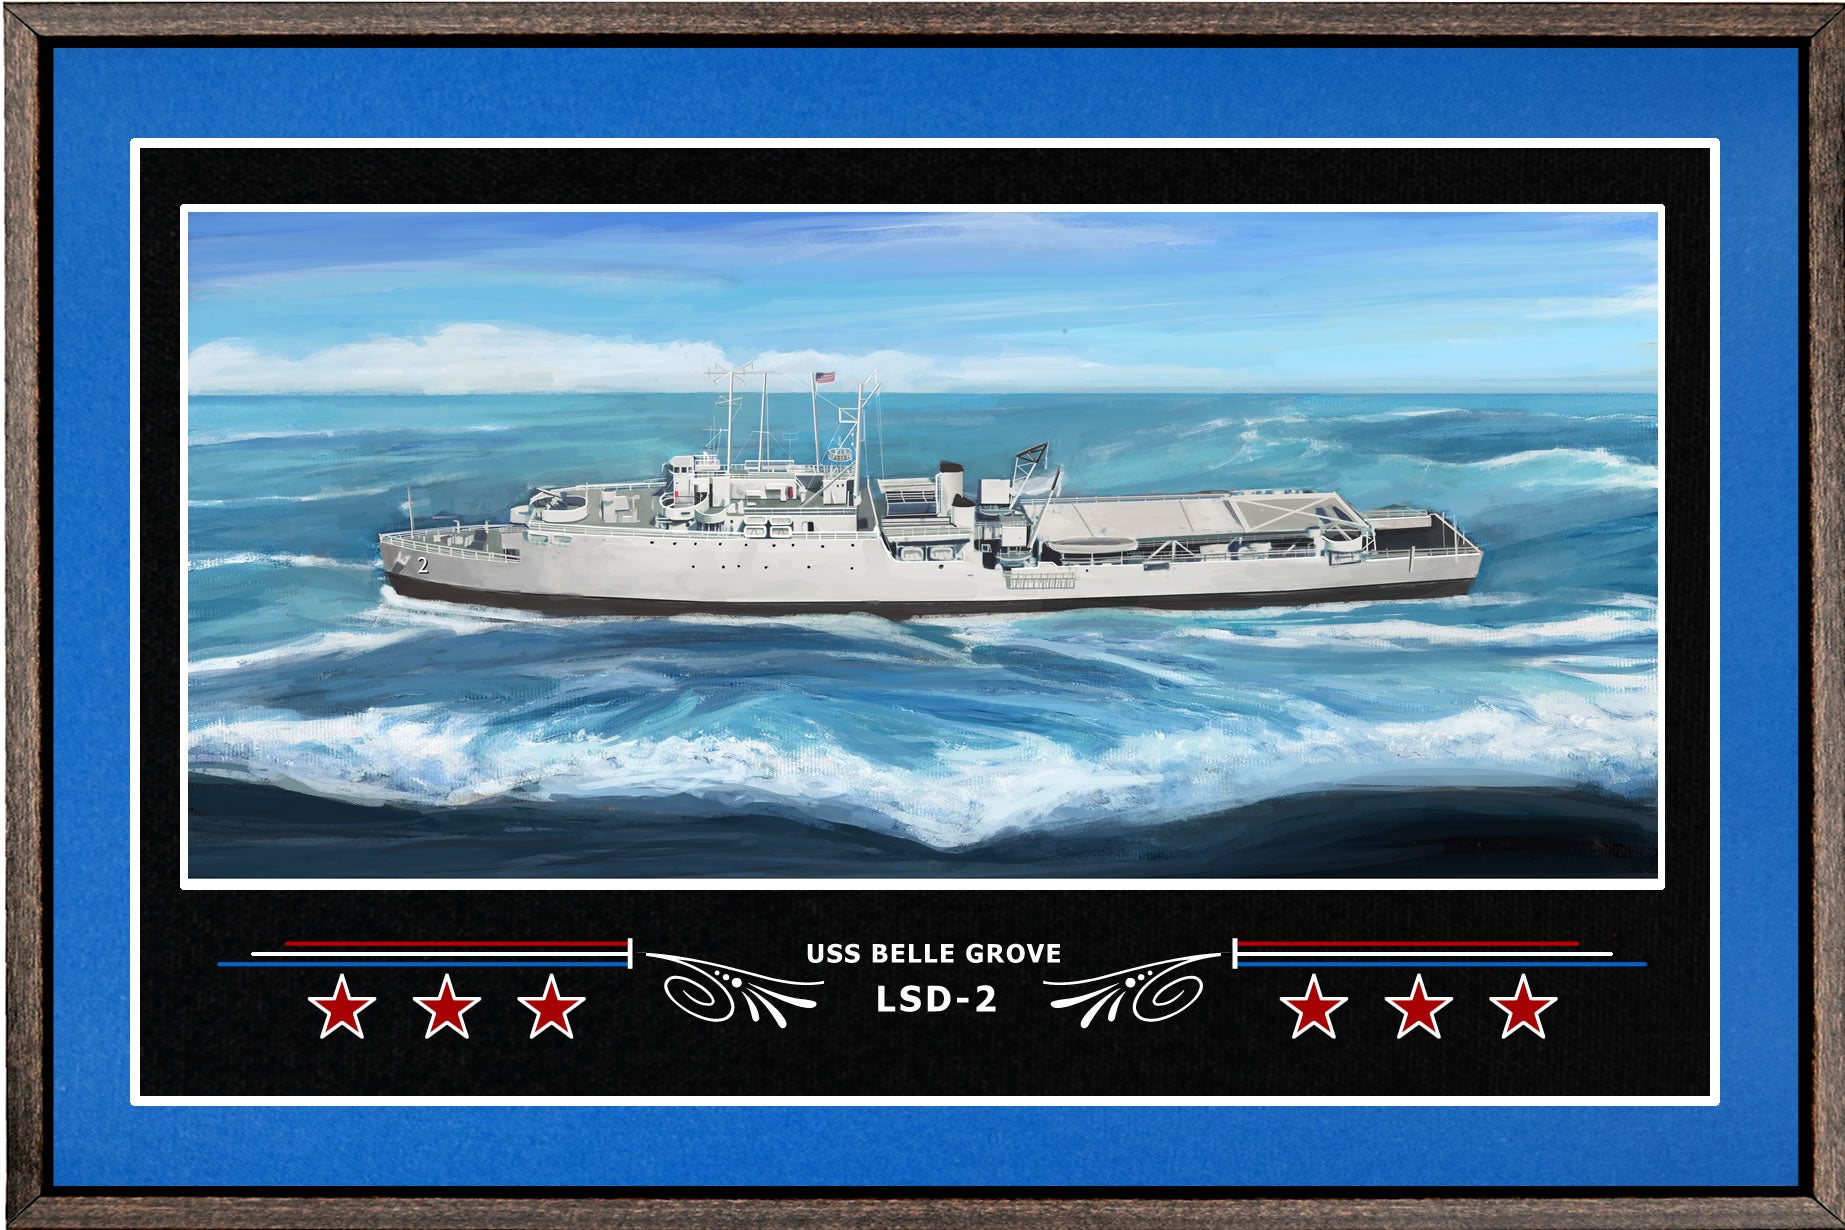 USS BELLE GROVE LSD 2 BOX FRAMED CANVAS ART BLUE